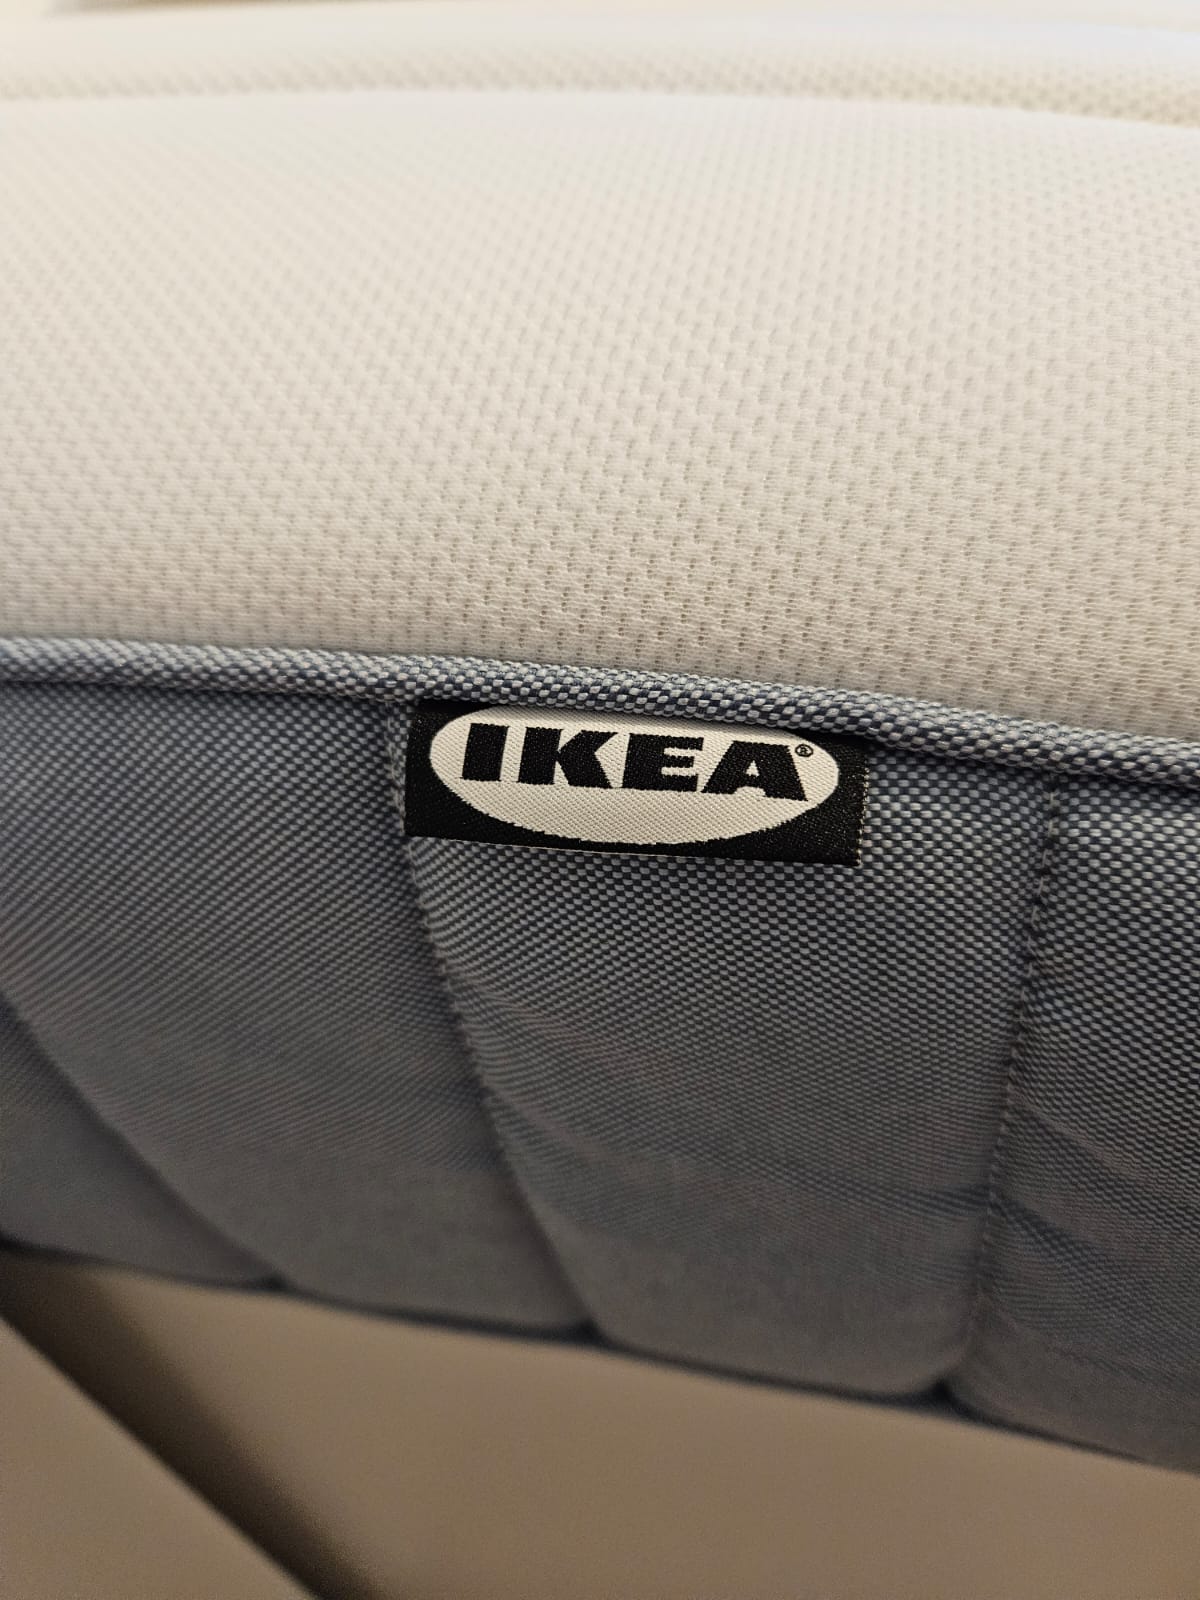 Sengestel, IKEA